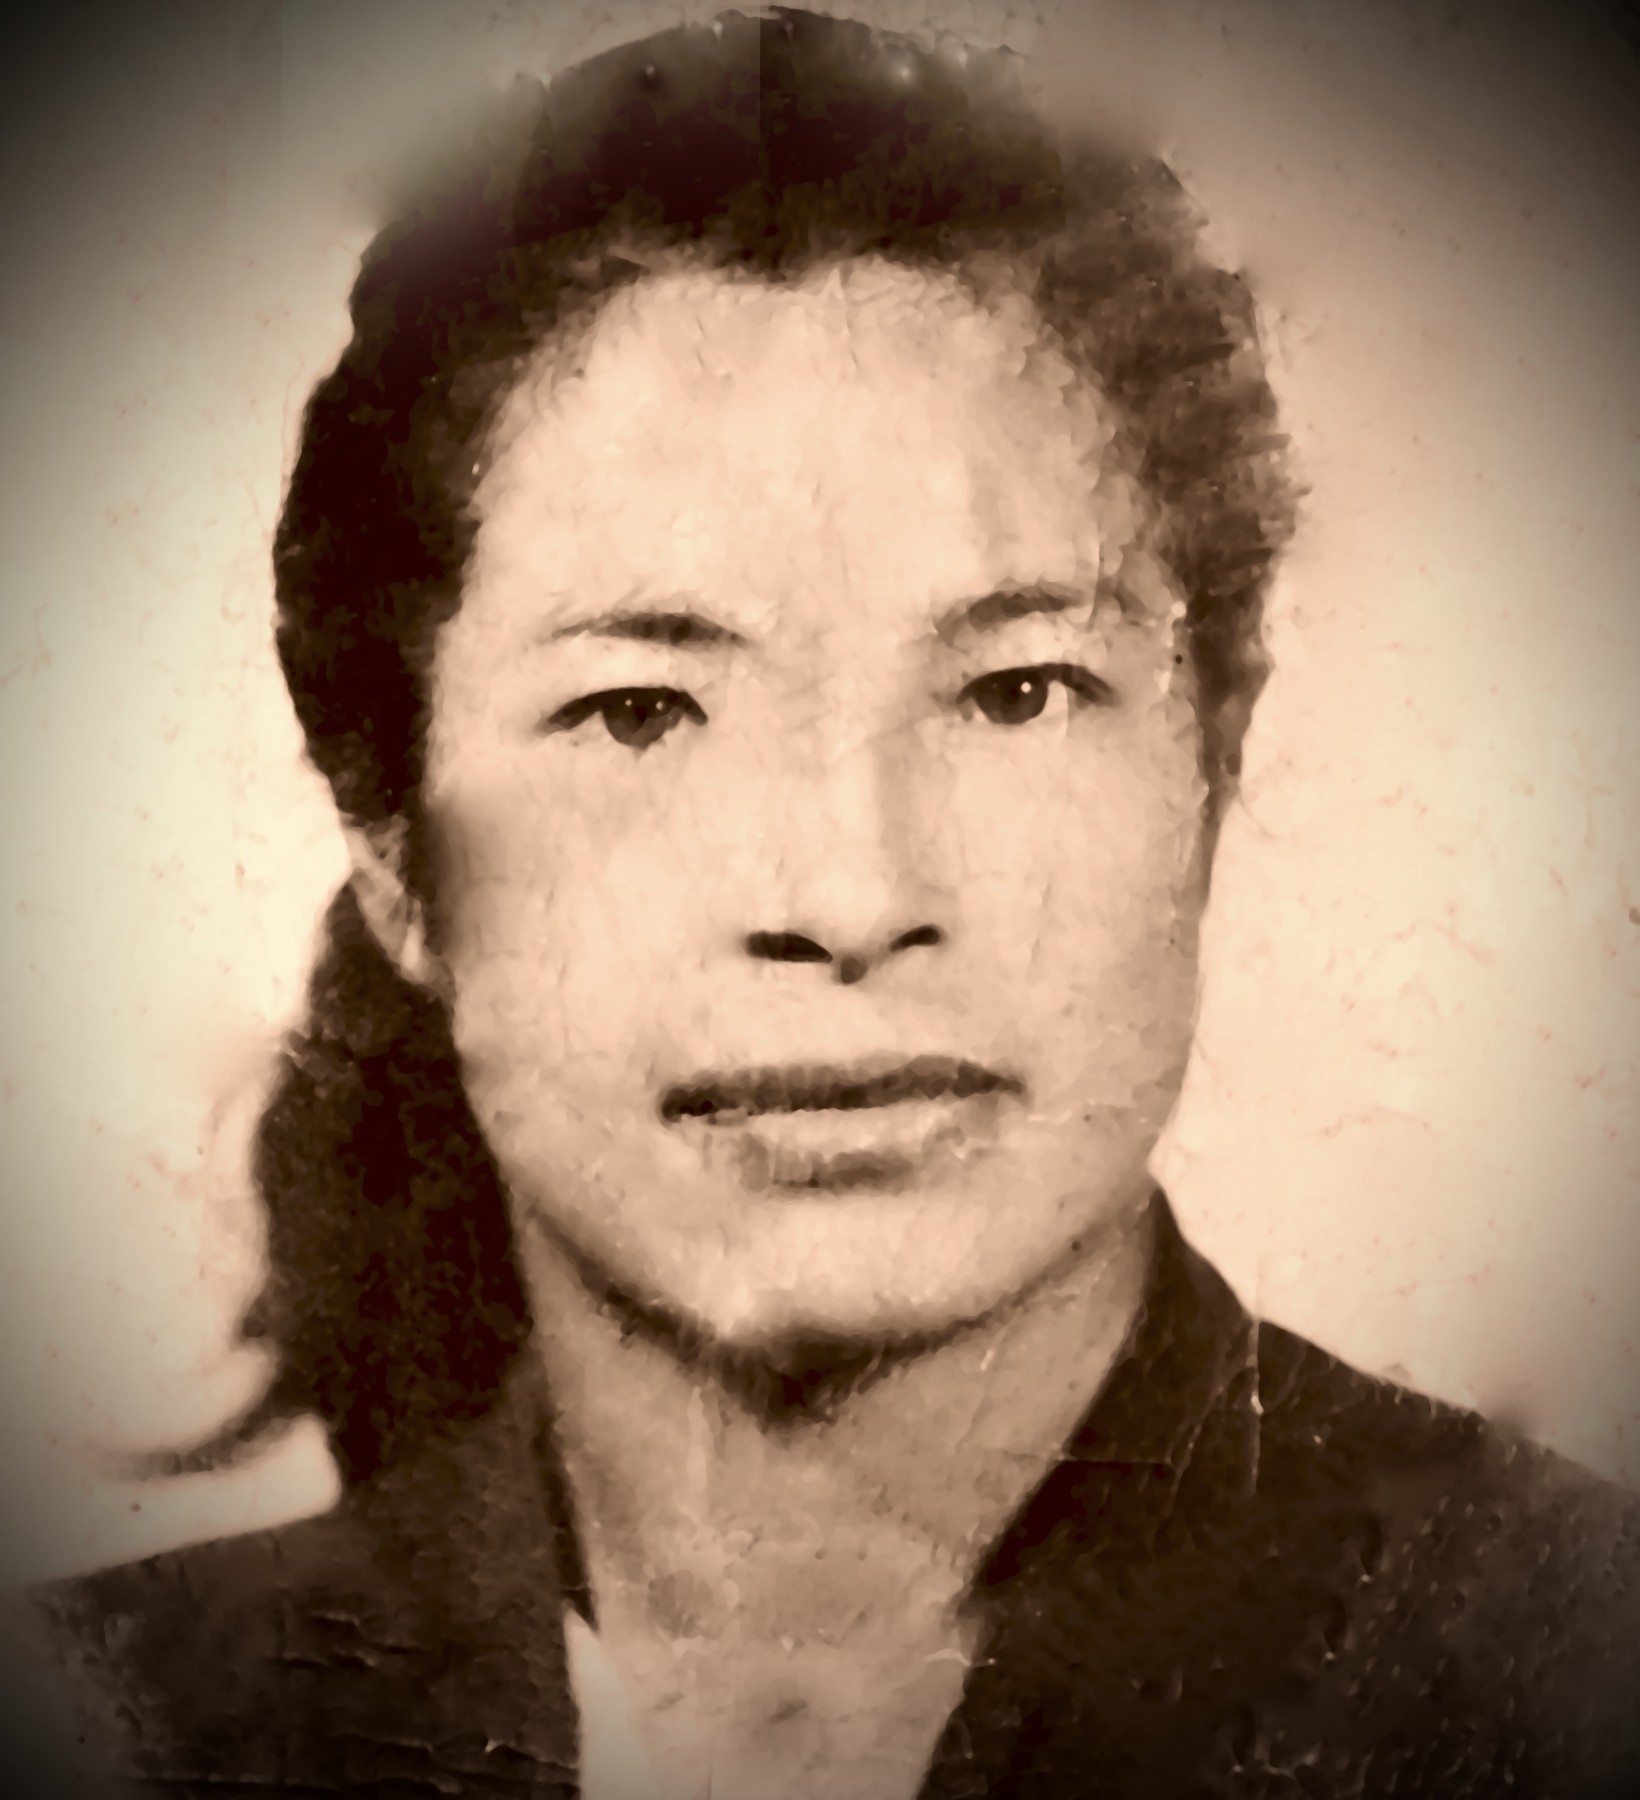 Obituary of Juana Hernandez - 09/03/2020 - From the Family